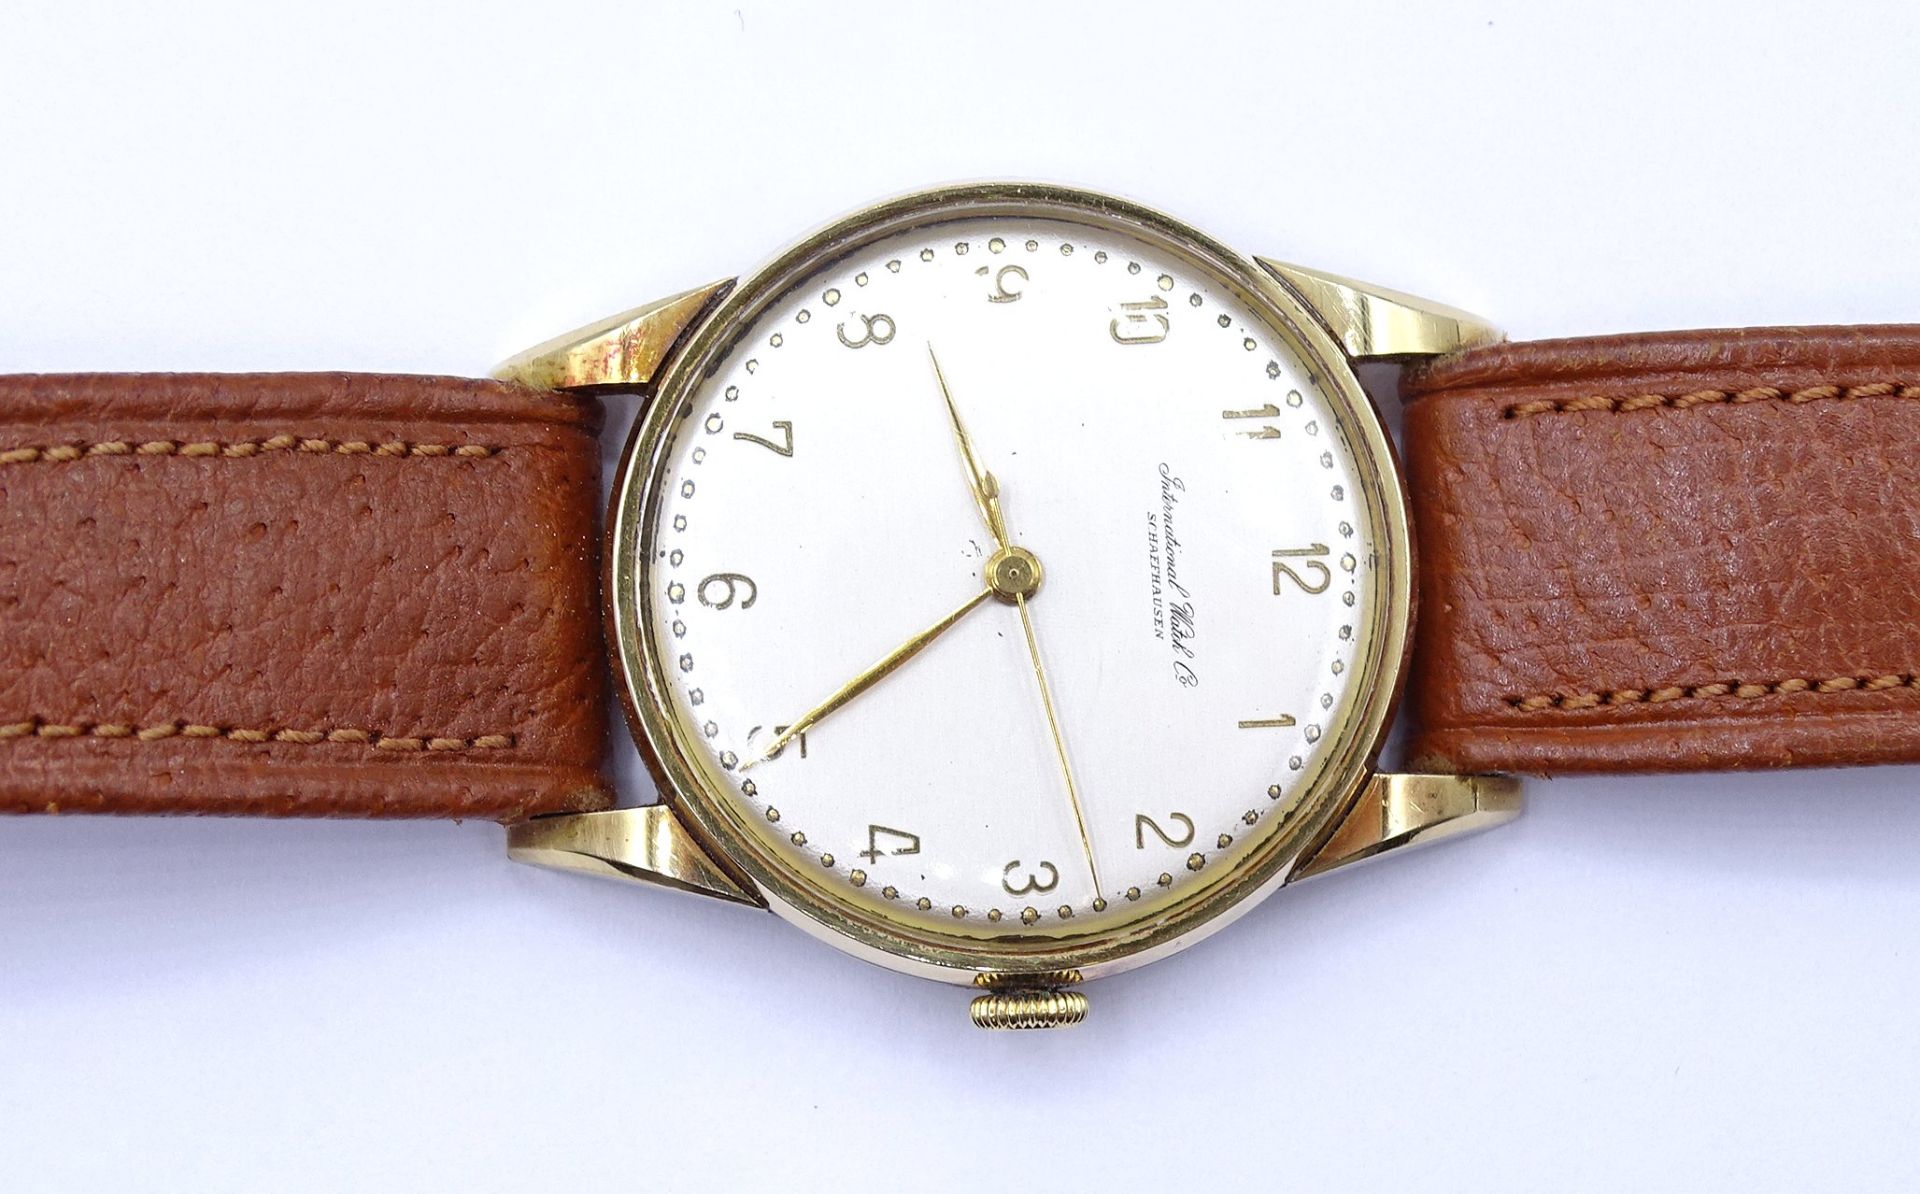 Herren Armbanduhr "IWC" International Watch Co, Schaffhausen, Cal. 89, Gold 750/000, mechanisch, We - Bild 2 aus 11